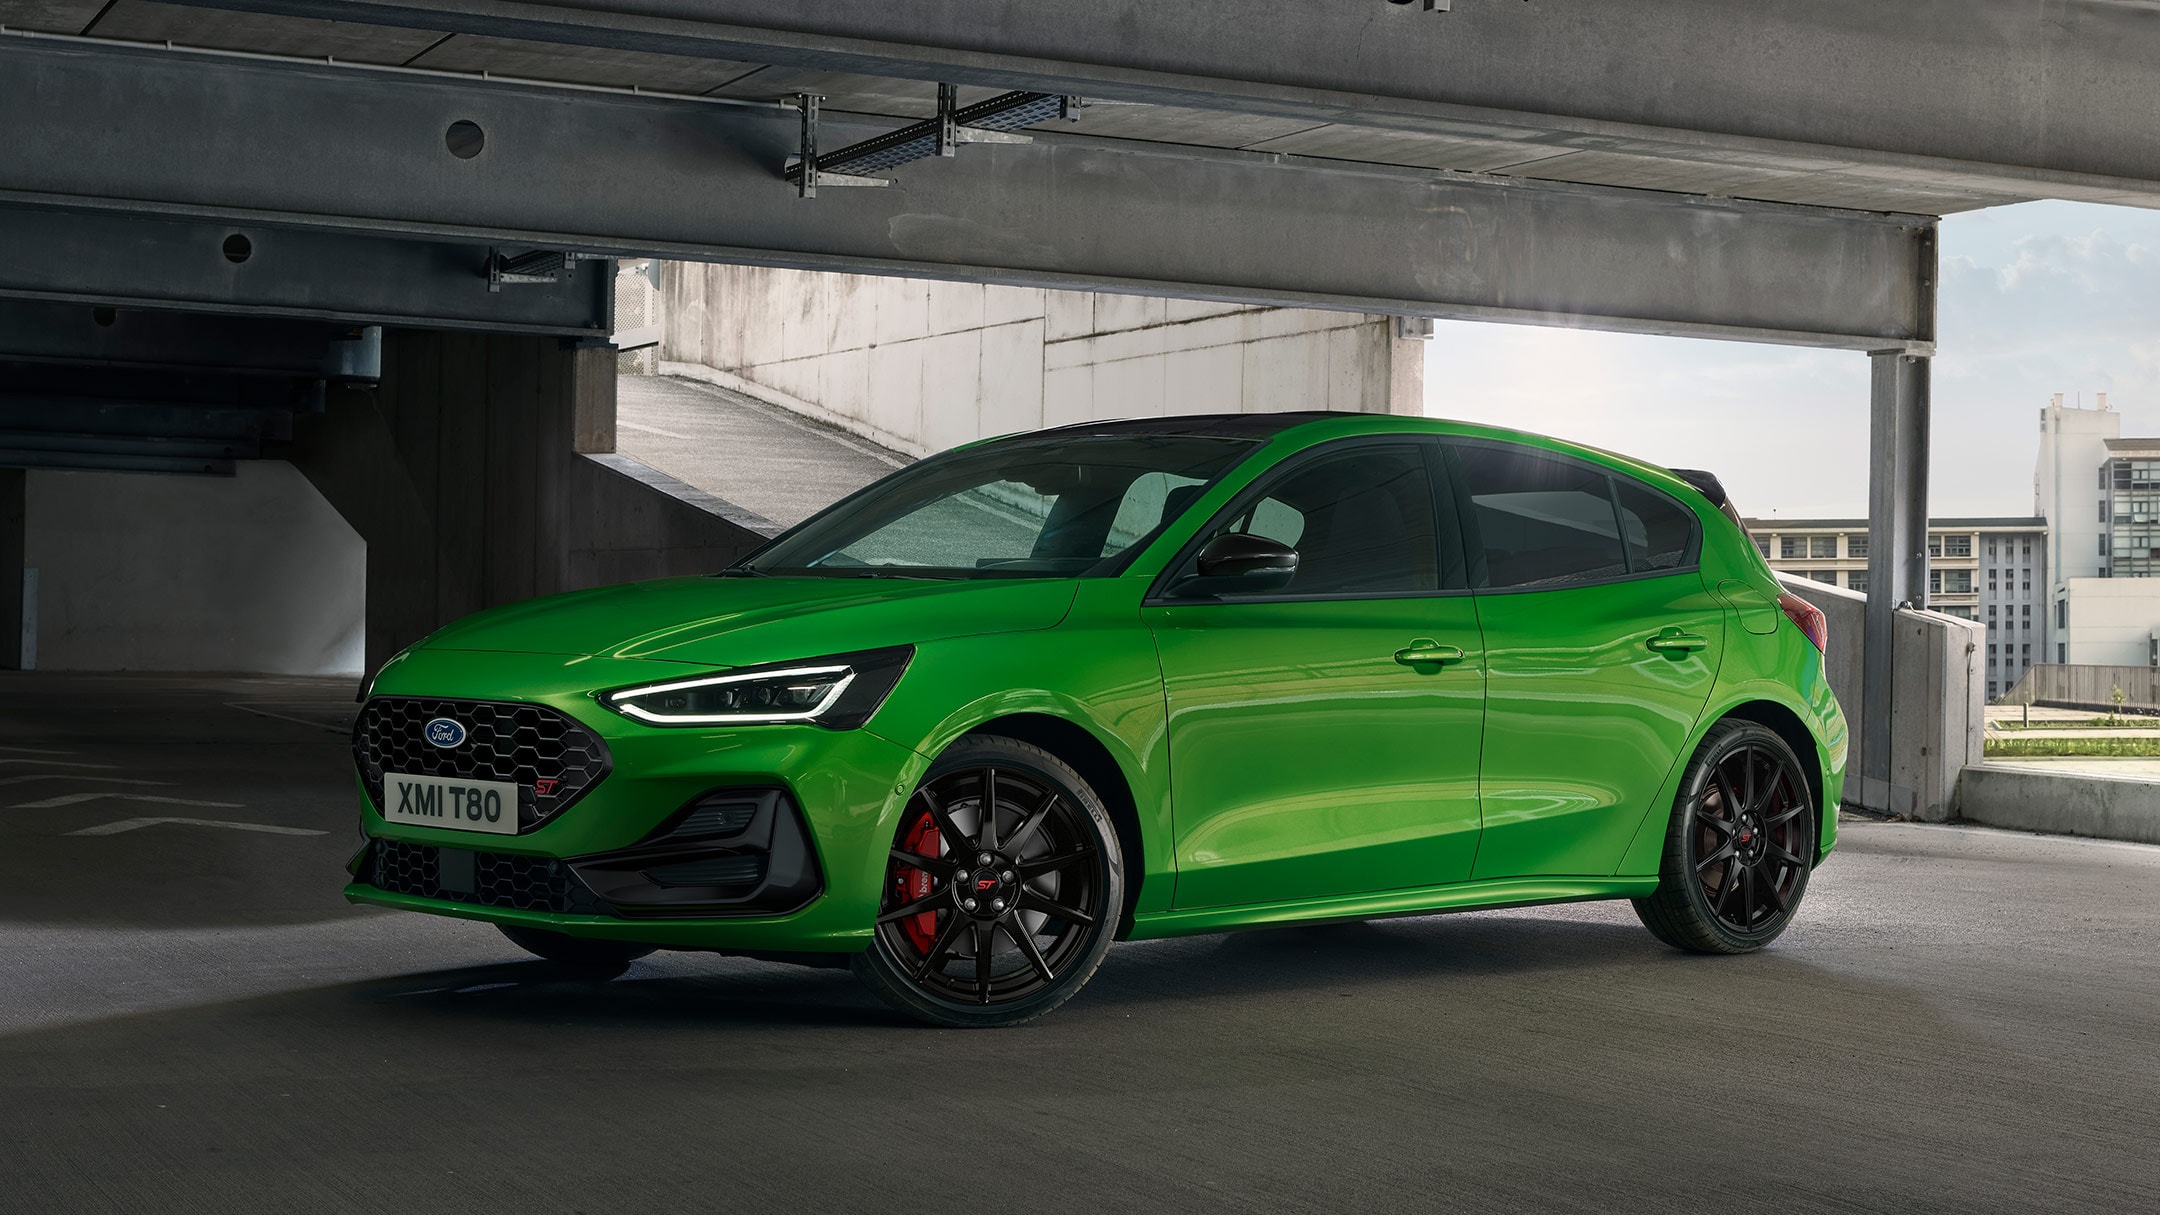 Ford Focus ST couleur verte, vue latérale, dans un parking